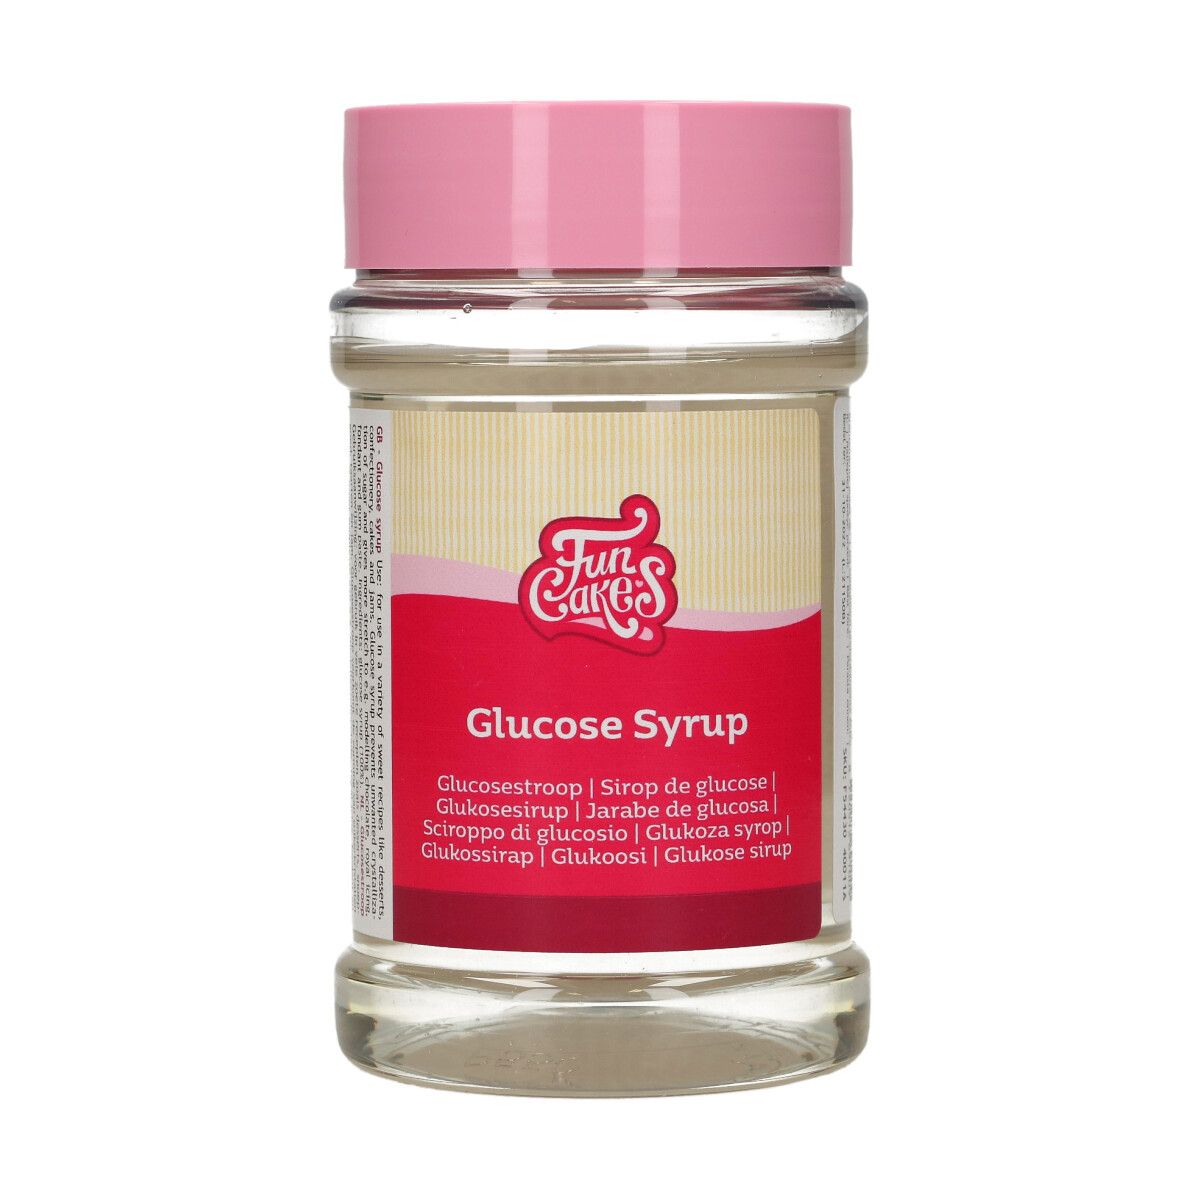 Flytande glukossirap, eller glykos som det också kallas. En genomskinlig vätska som används till godis och bakverk.